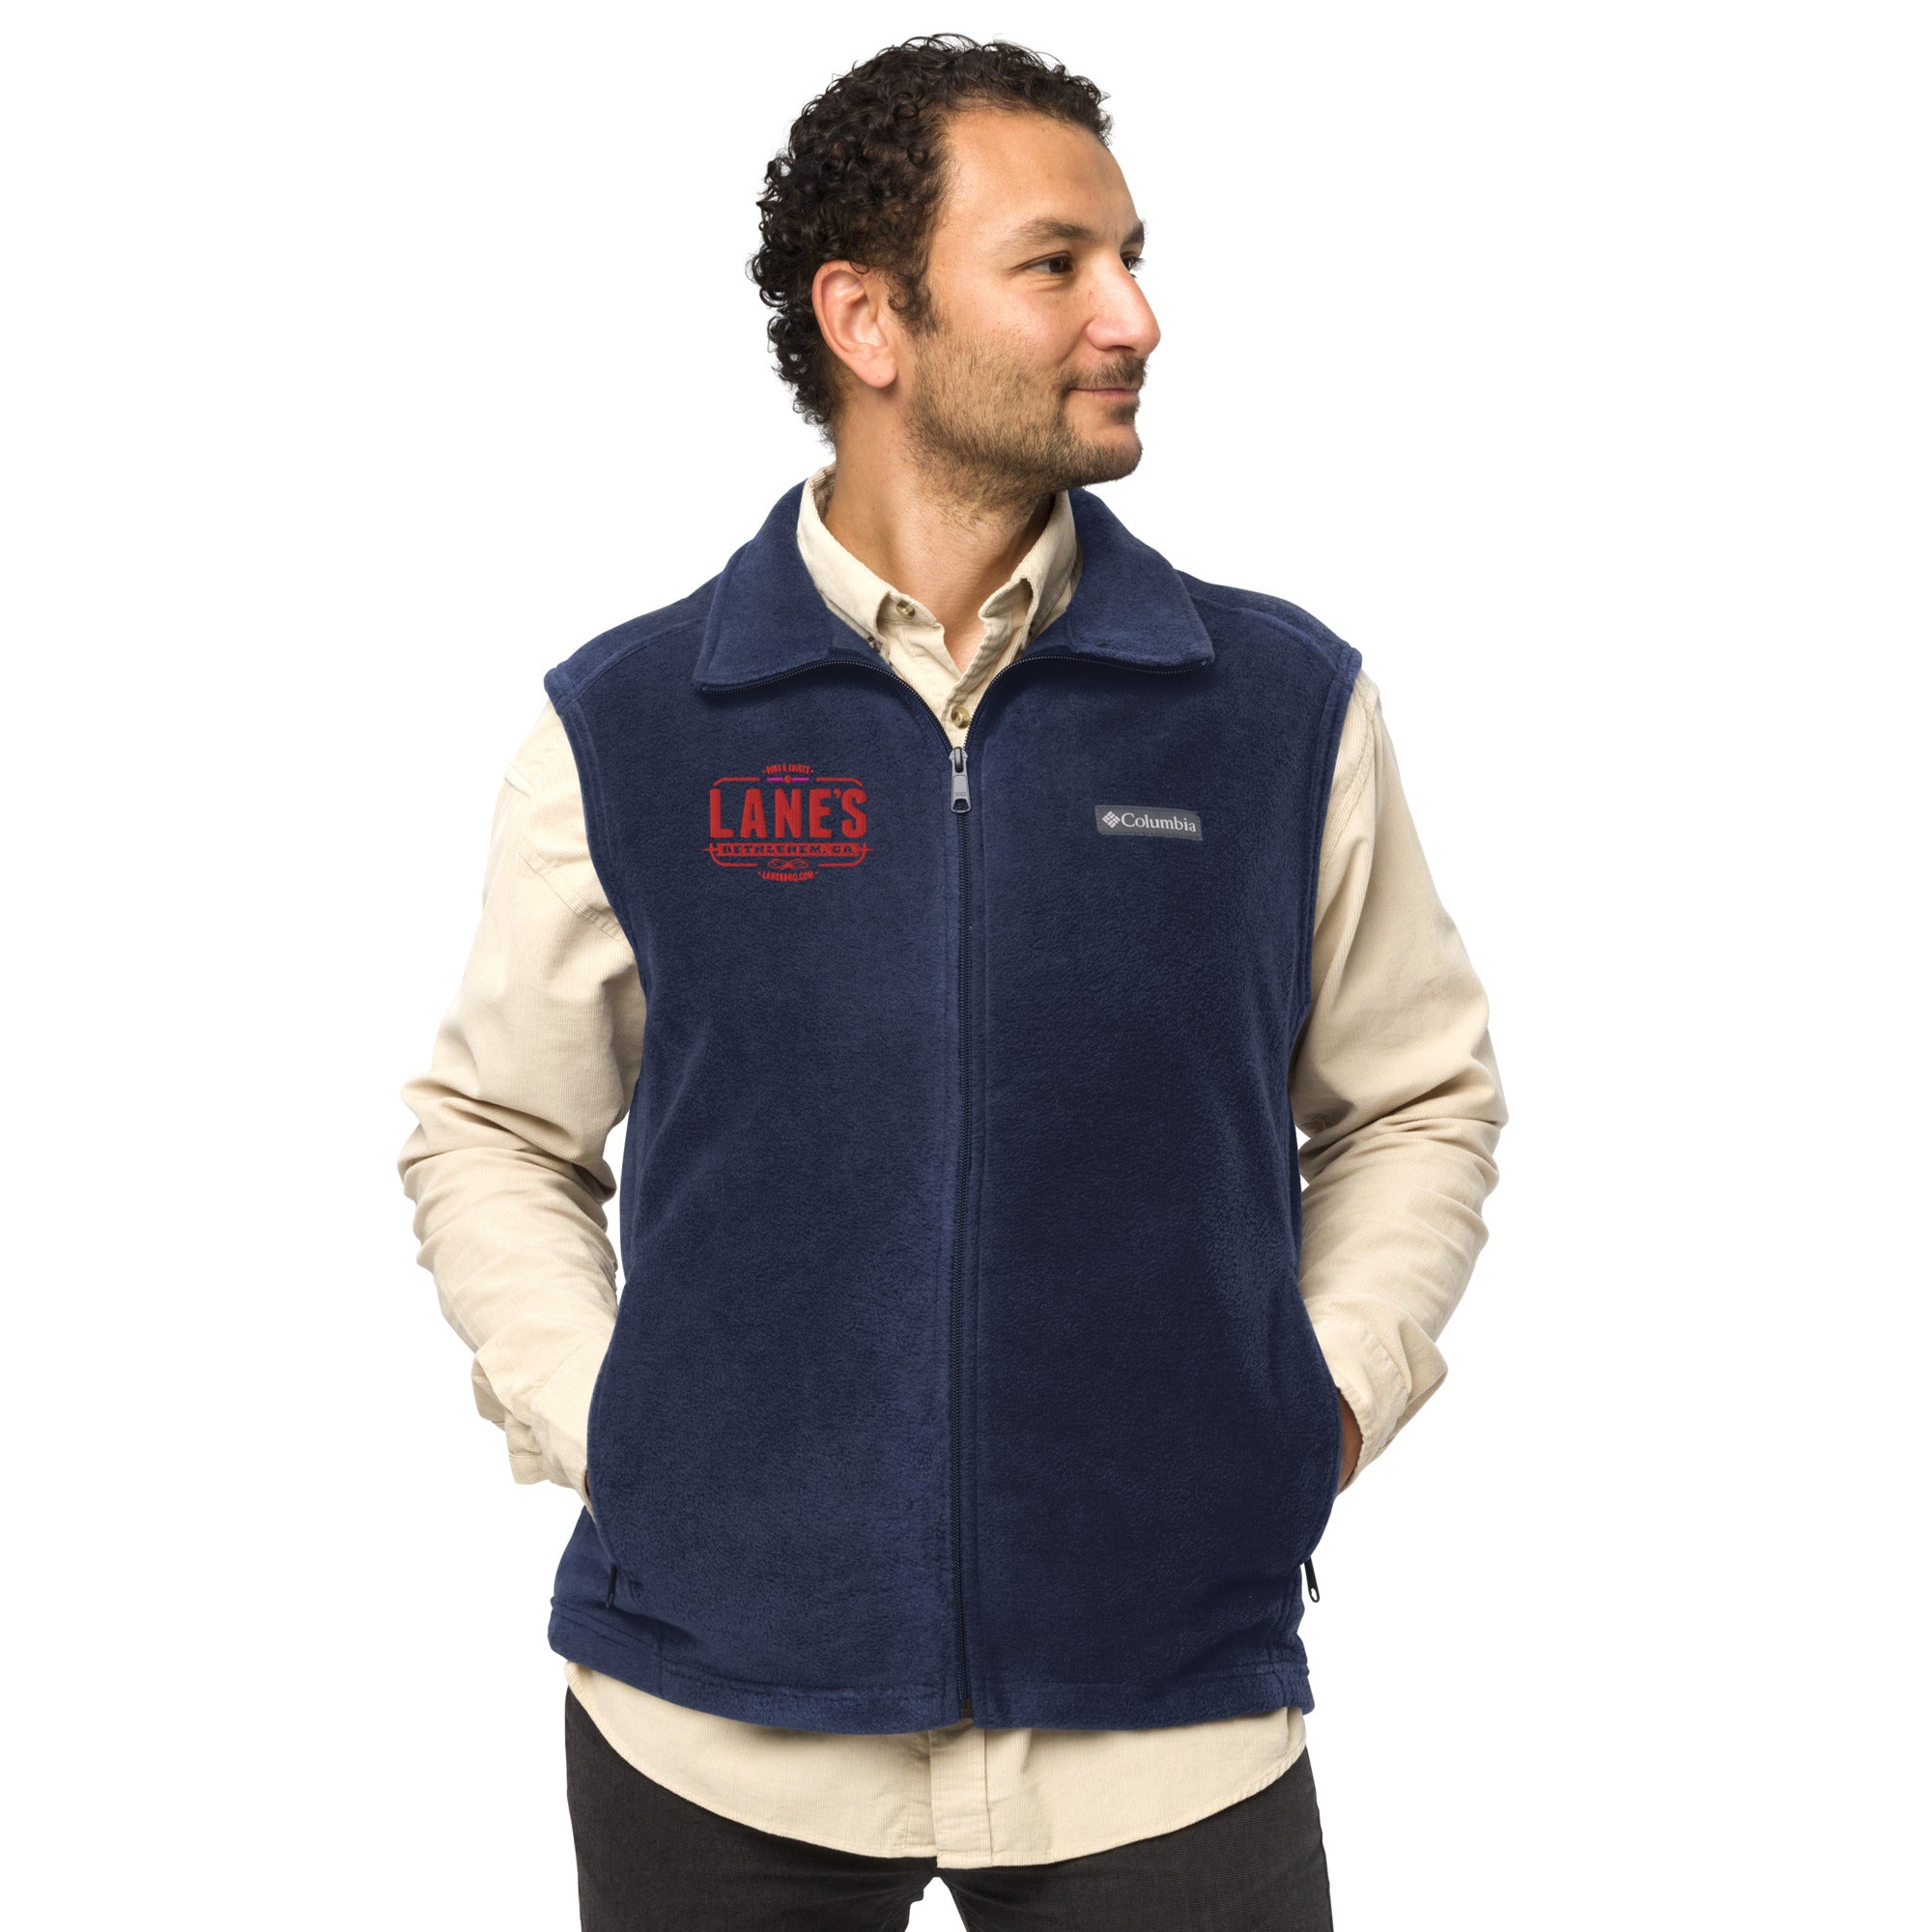 Men's Columbia fleece vest